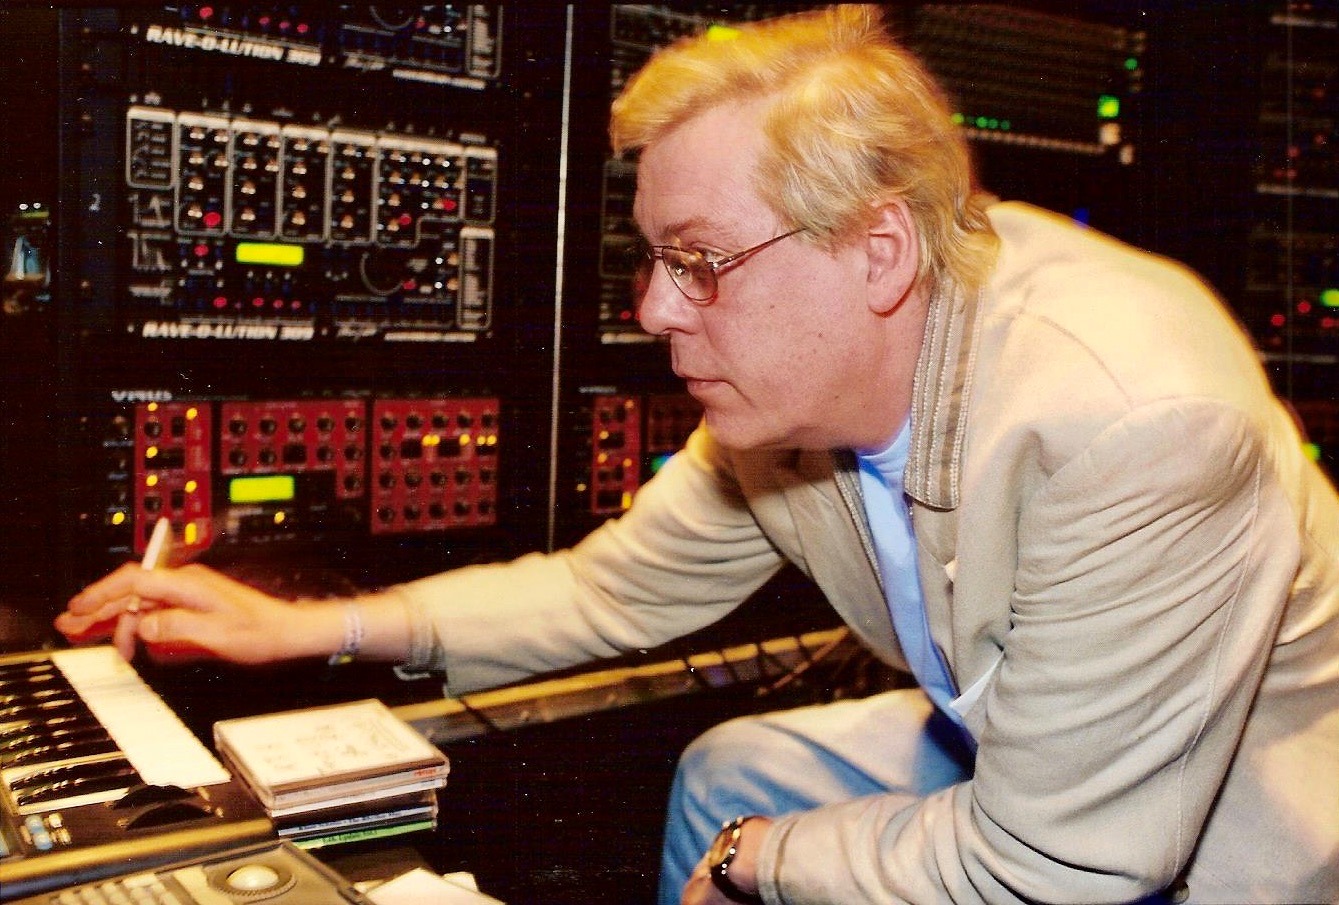 You are currently viewing Morre Klaus Schulze, ex-Tangerine Dream e pioneiro da música eletrônica, aos 74 anos